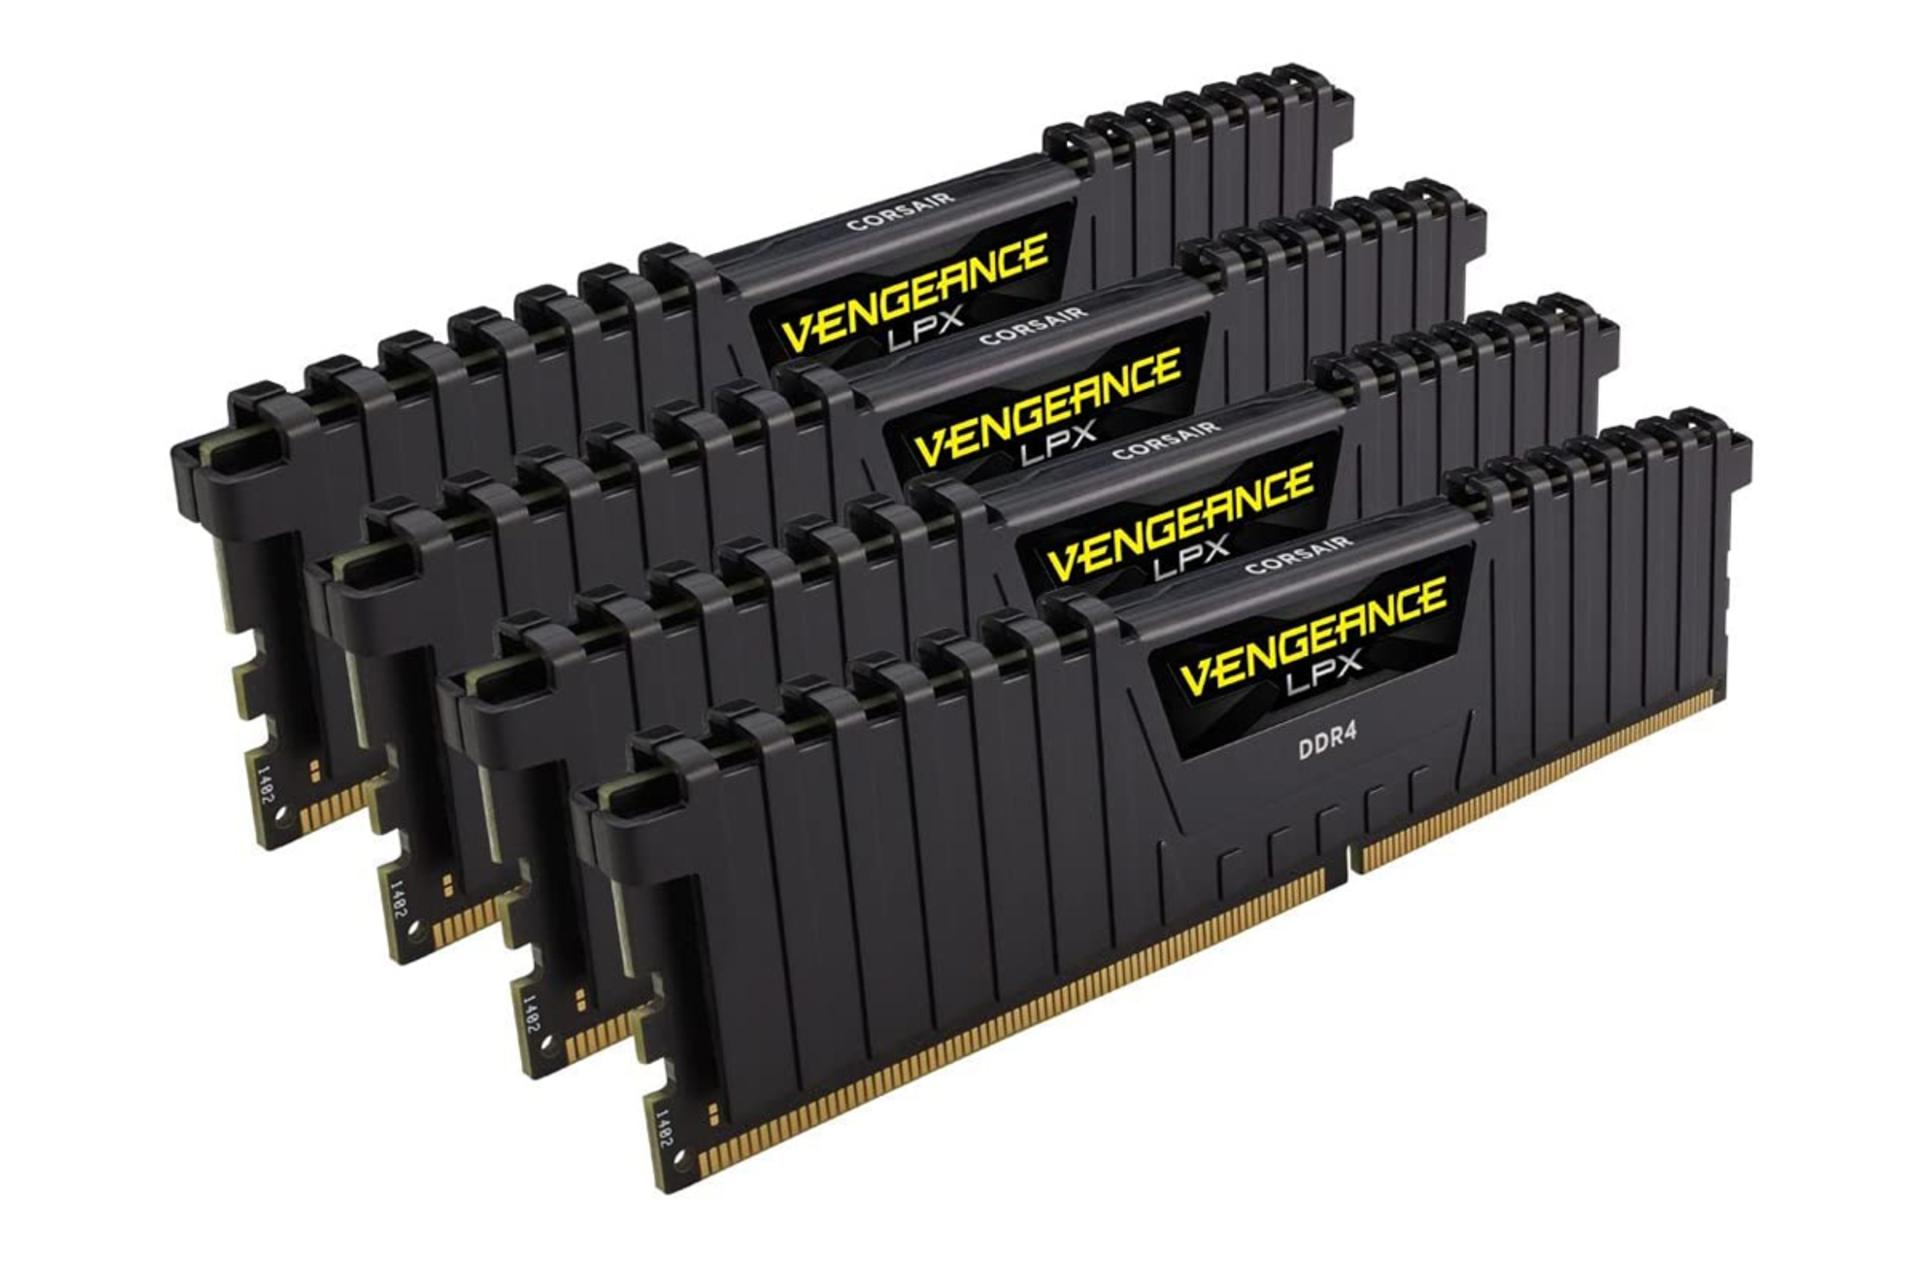 نمای کنار رم کورسیر VENGEANCE LPX ظرفیت 64 گیگابایت (4x16) از نوع DDR4-2400